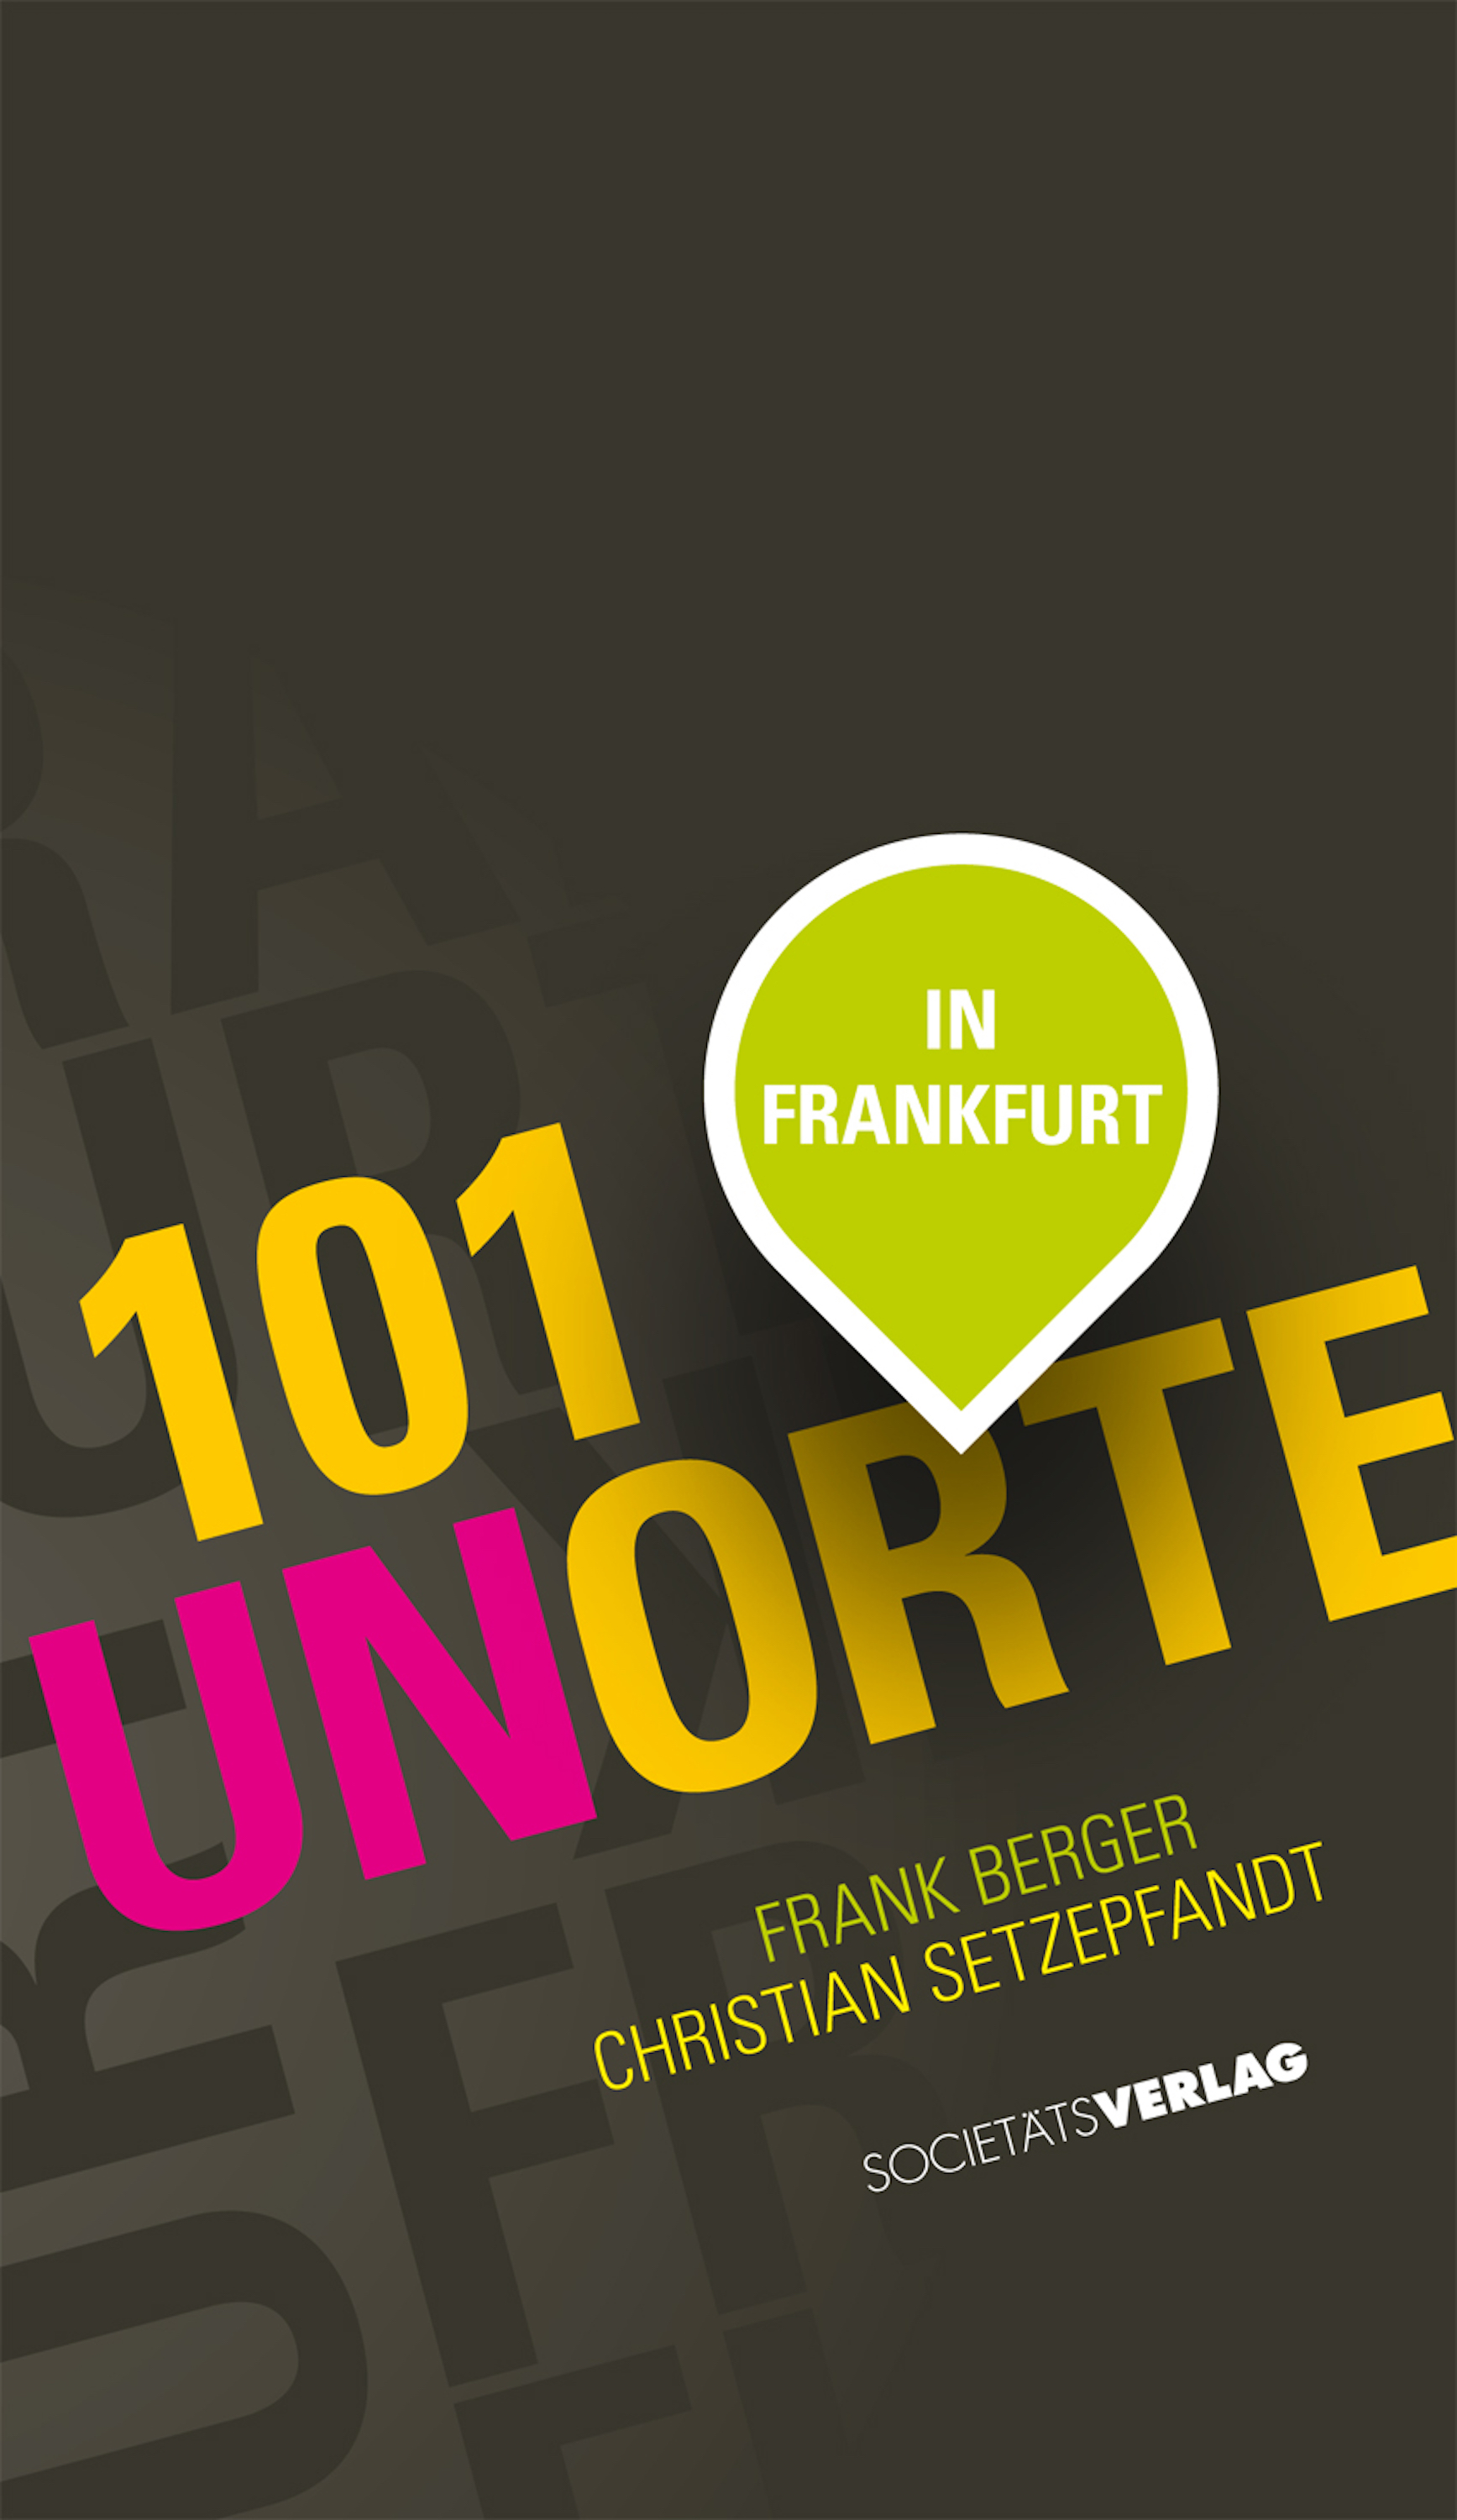 Christian Setzepfand 101 Unorte in Frankfurt